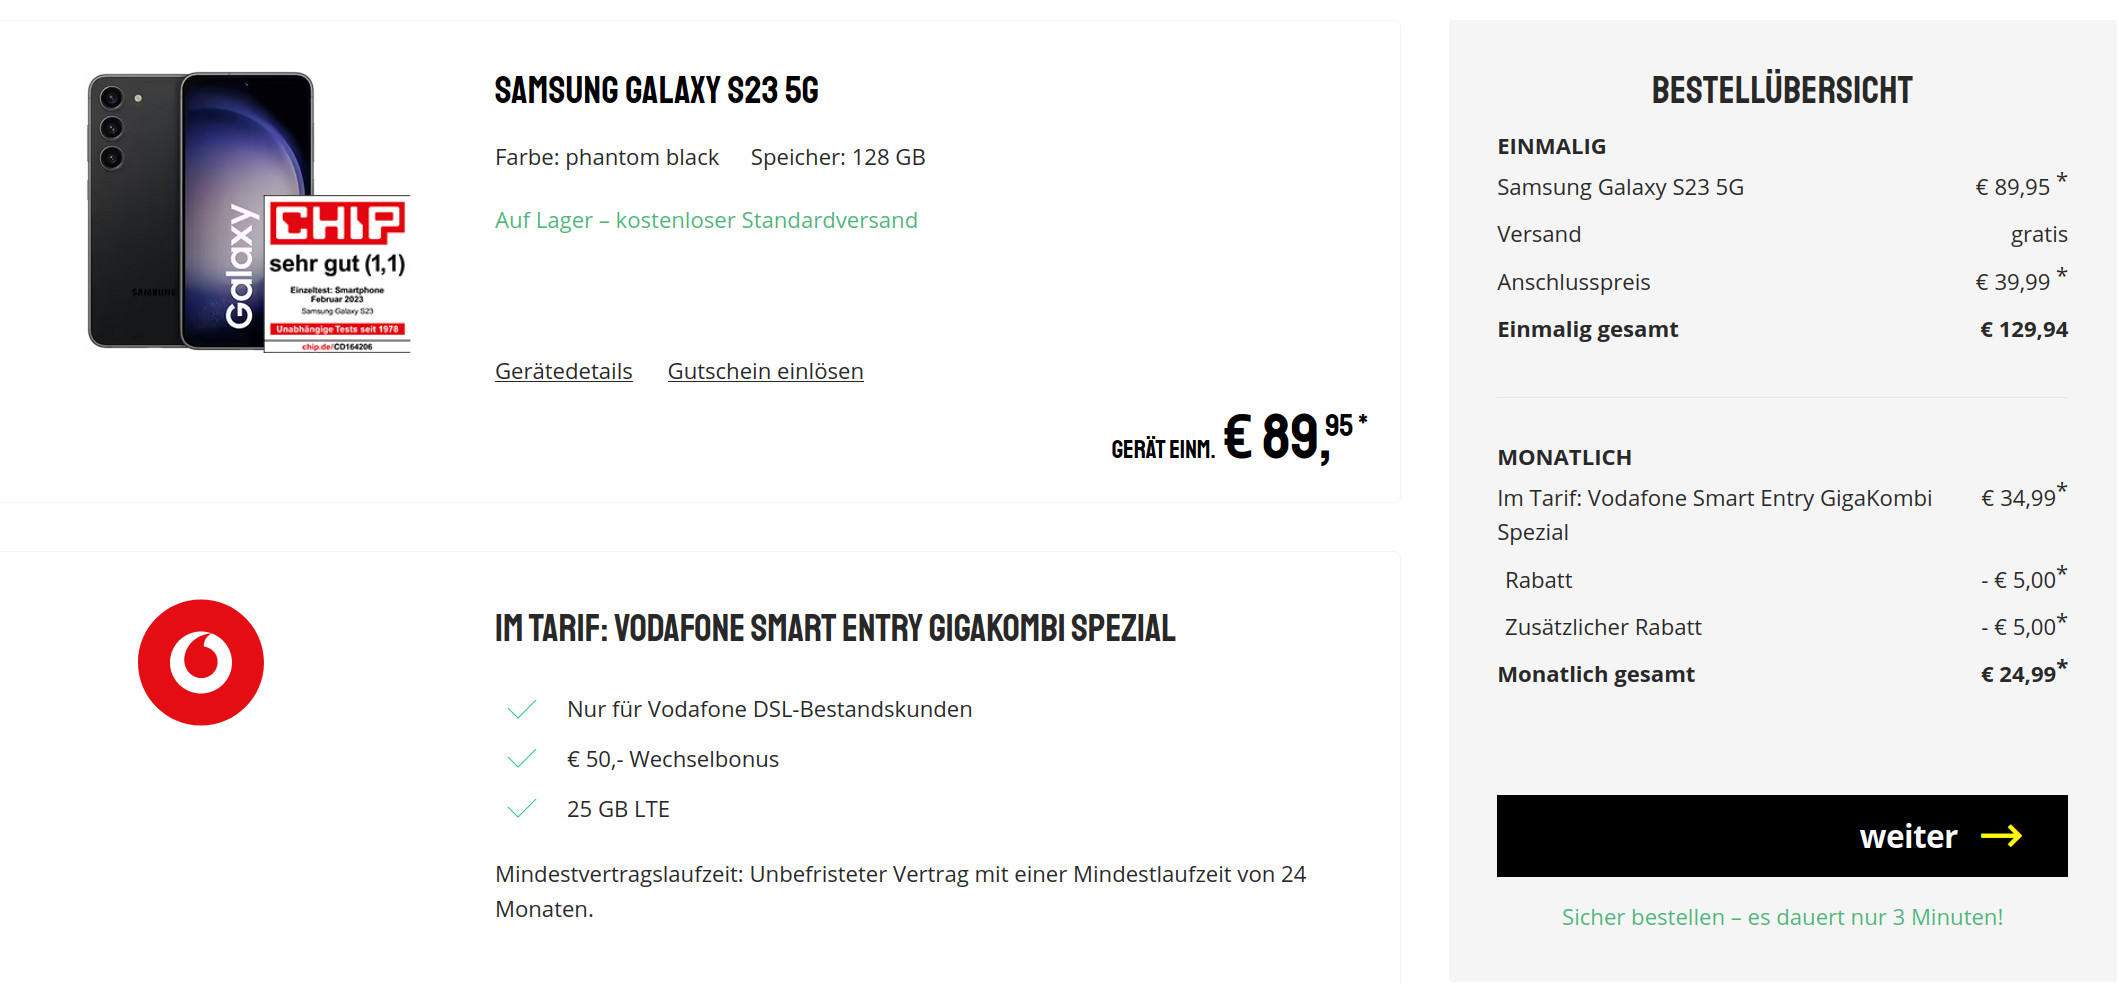 Preiskracher Galaxy S23 5G Handytarife: 50 Euro Wechselbonus mit 25 GB Vodafone Smart GigaKombi für 24,99 Euro/Eff. -2,09 Euro